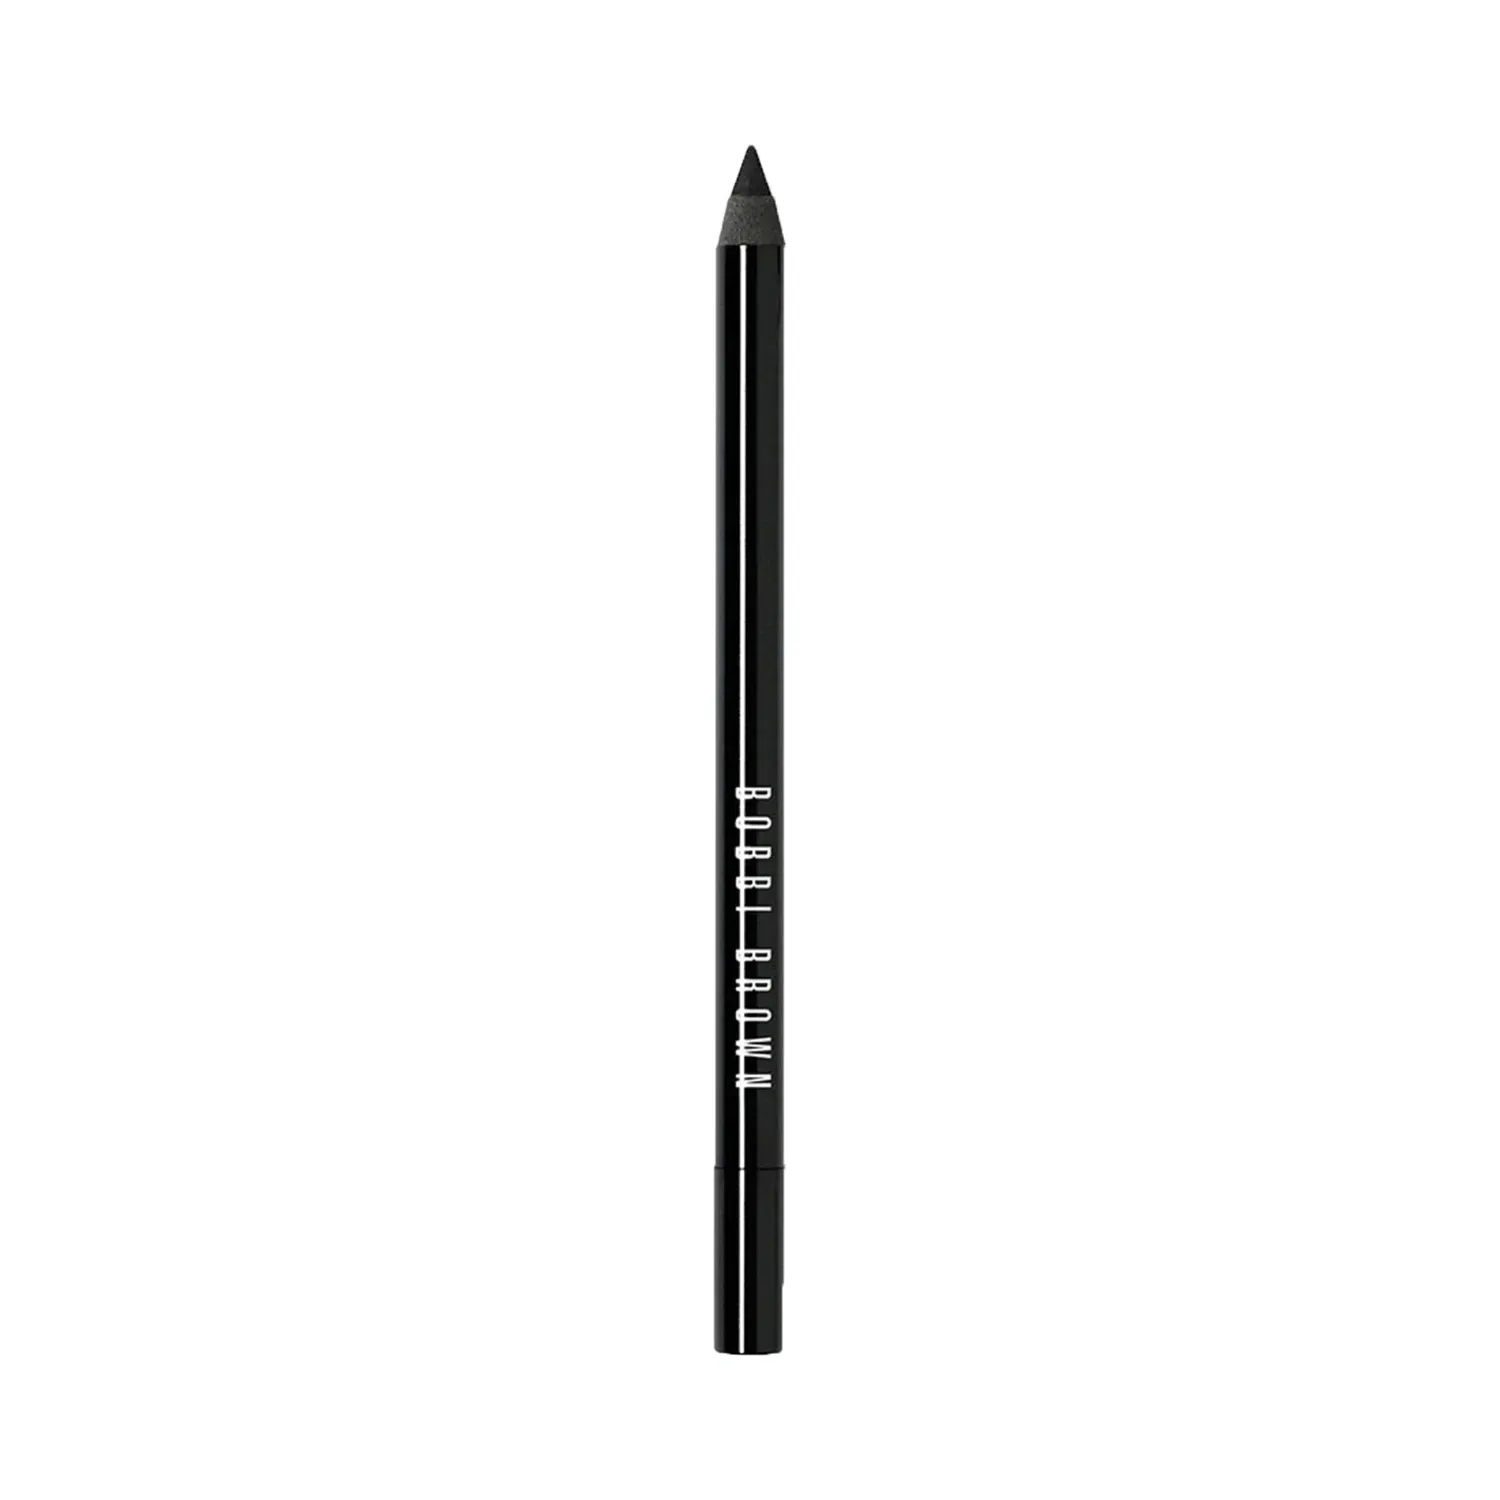 Bobbi Brown Long Wear Eye Pencil - Jet Black (1.3g)